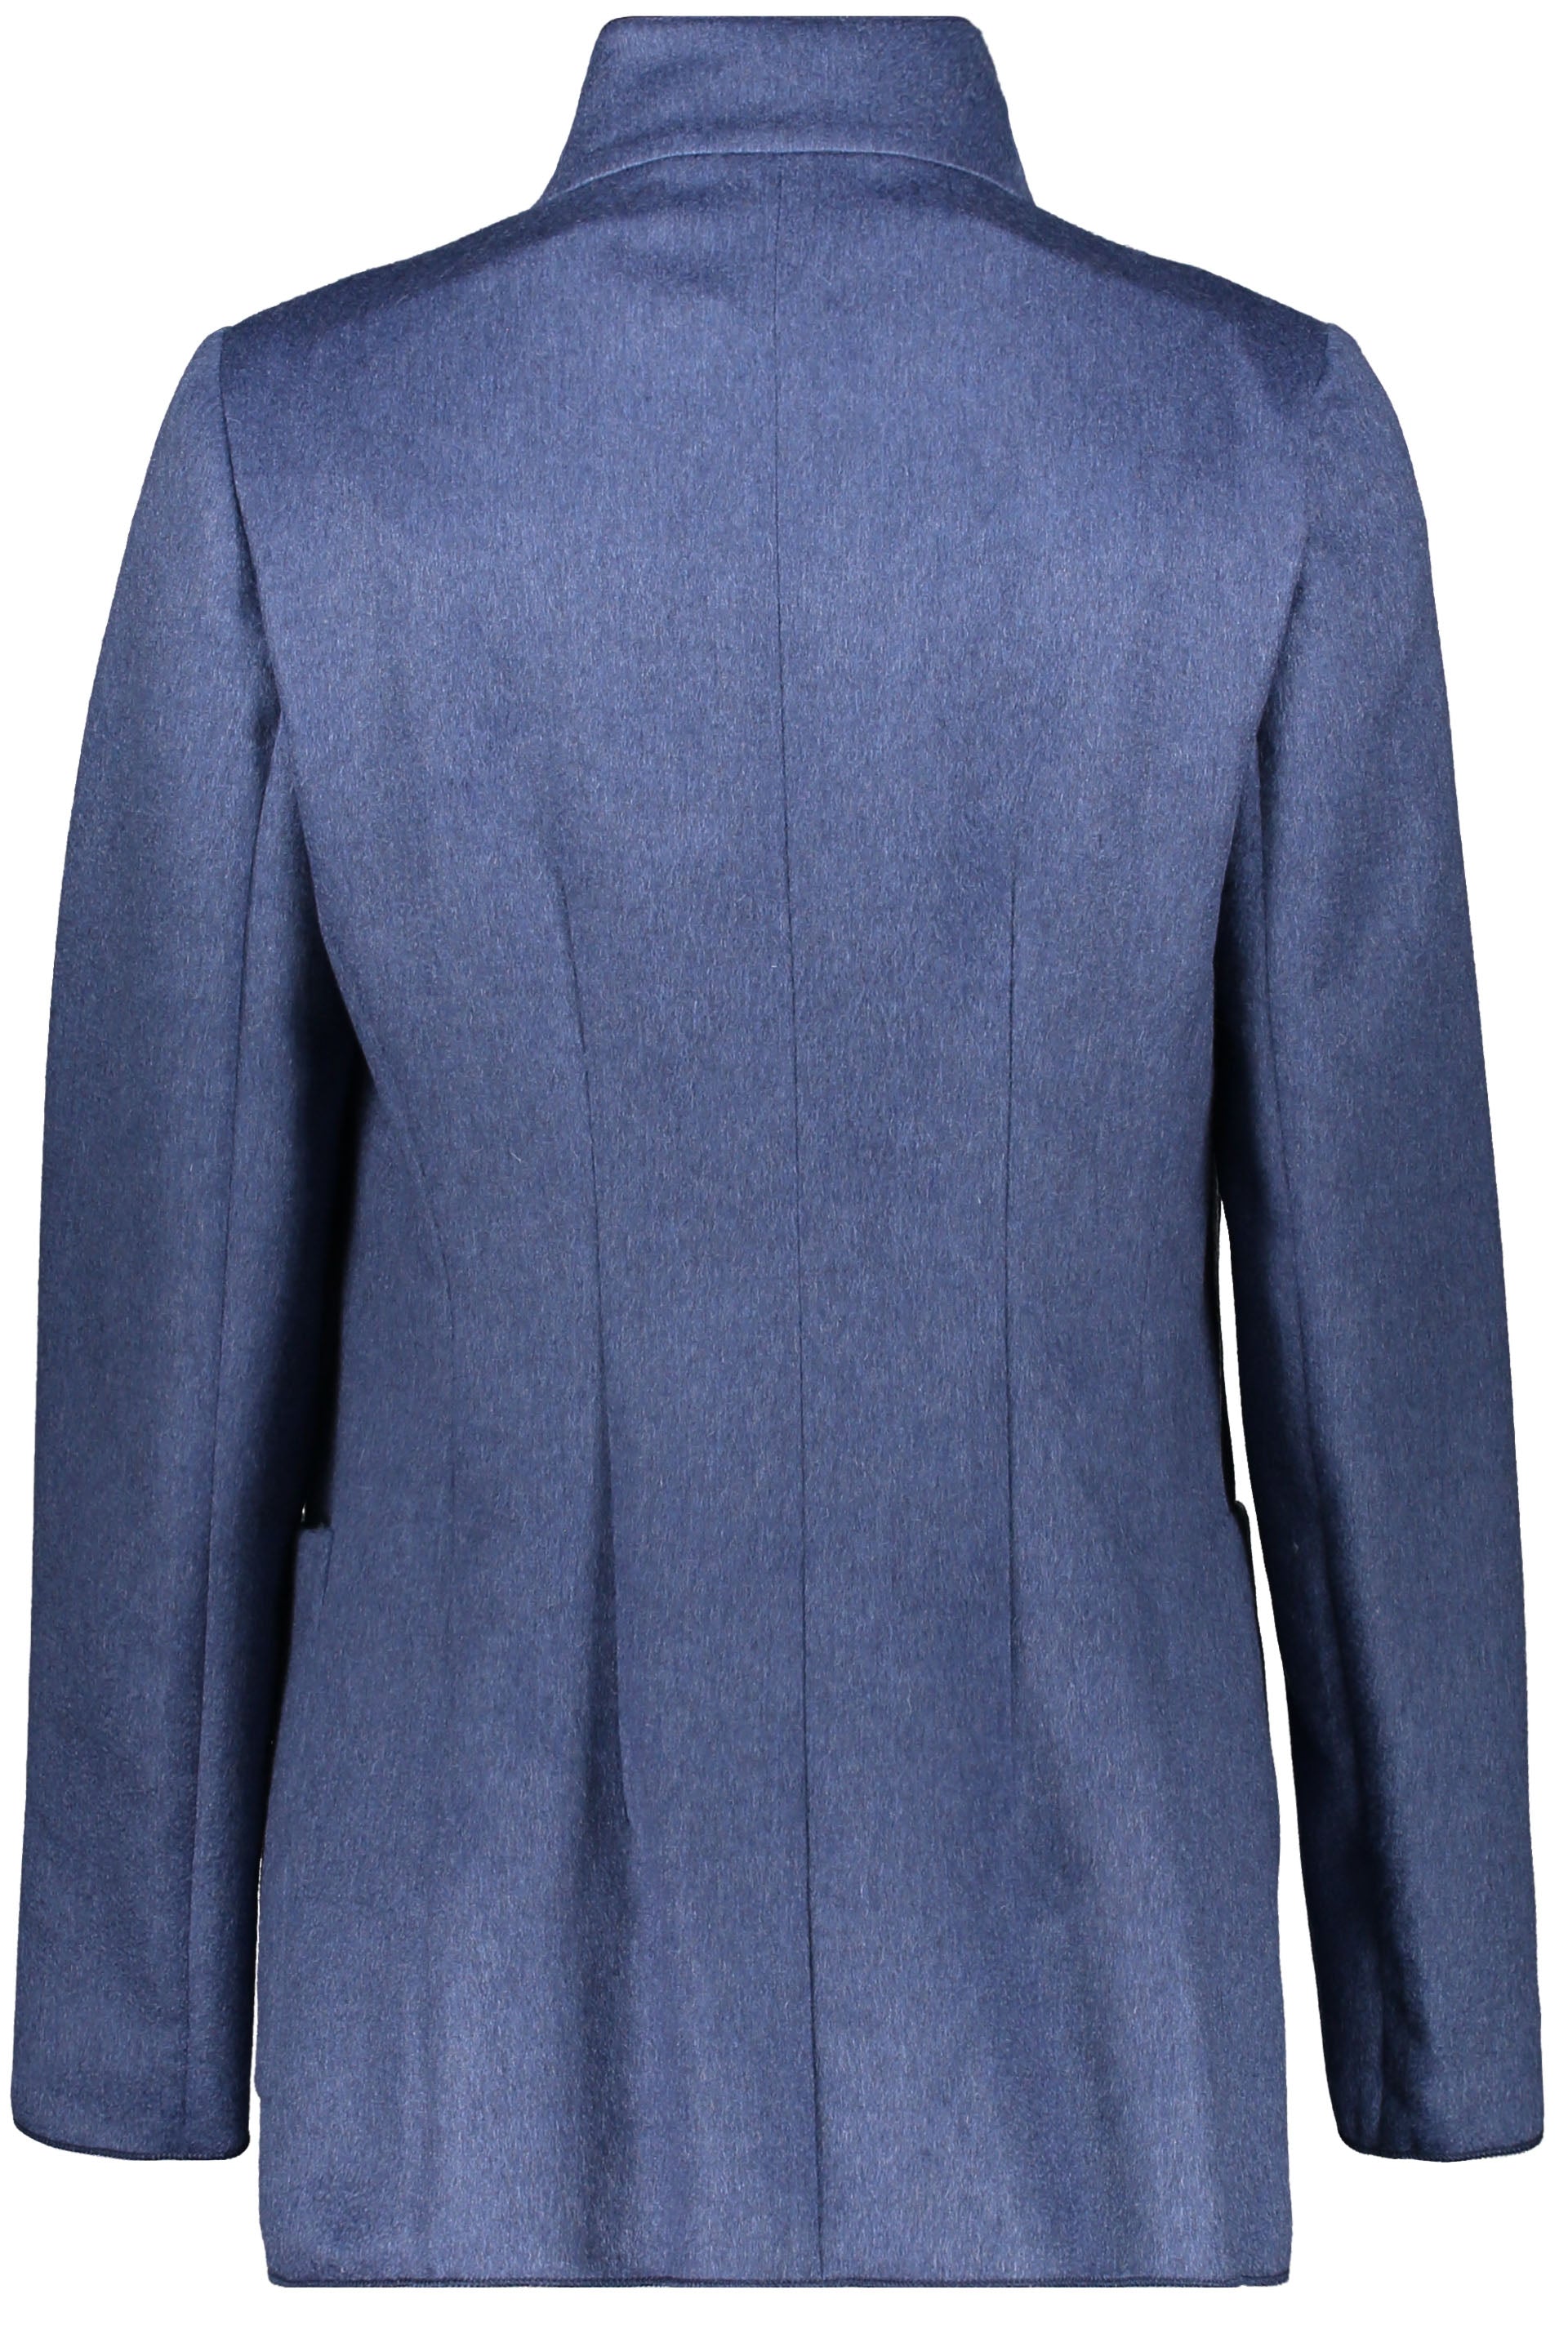 Agnona-OUTLET-SALE-Cashmere-jacket-Jacken-Mantel-38-ARCHIVE-COLLECTION.jpg